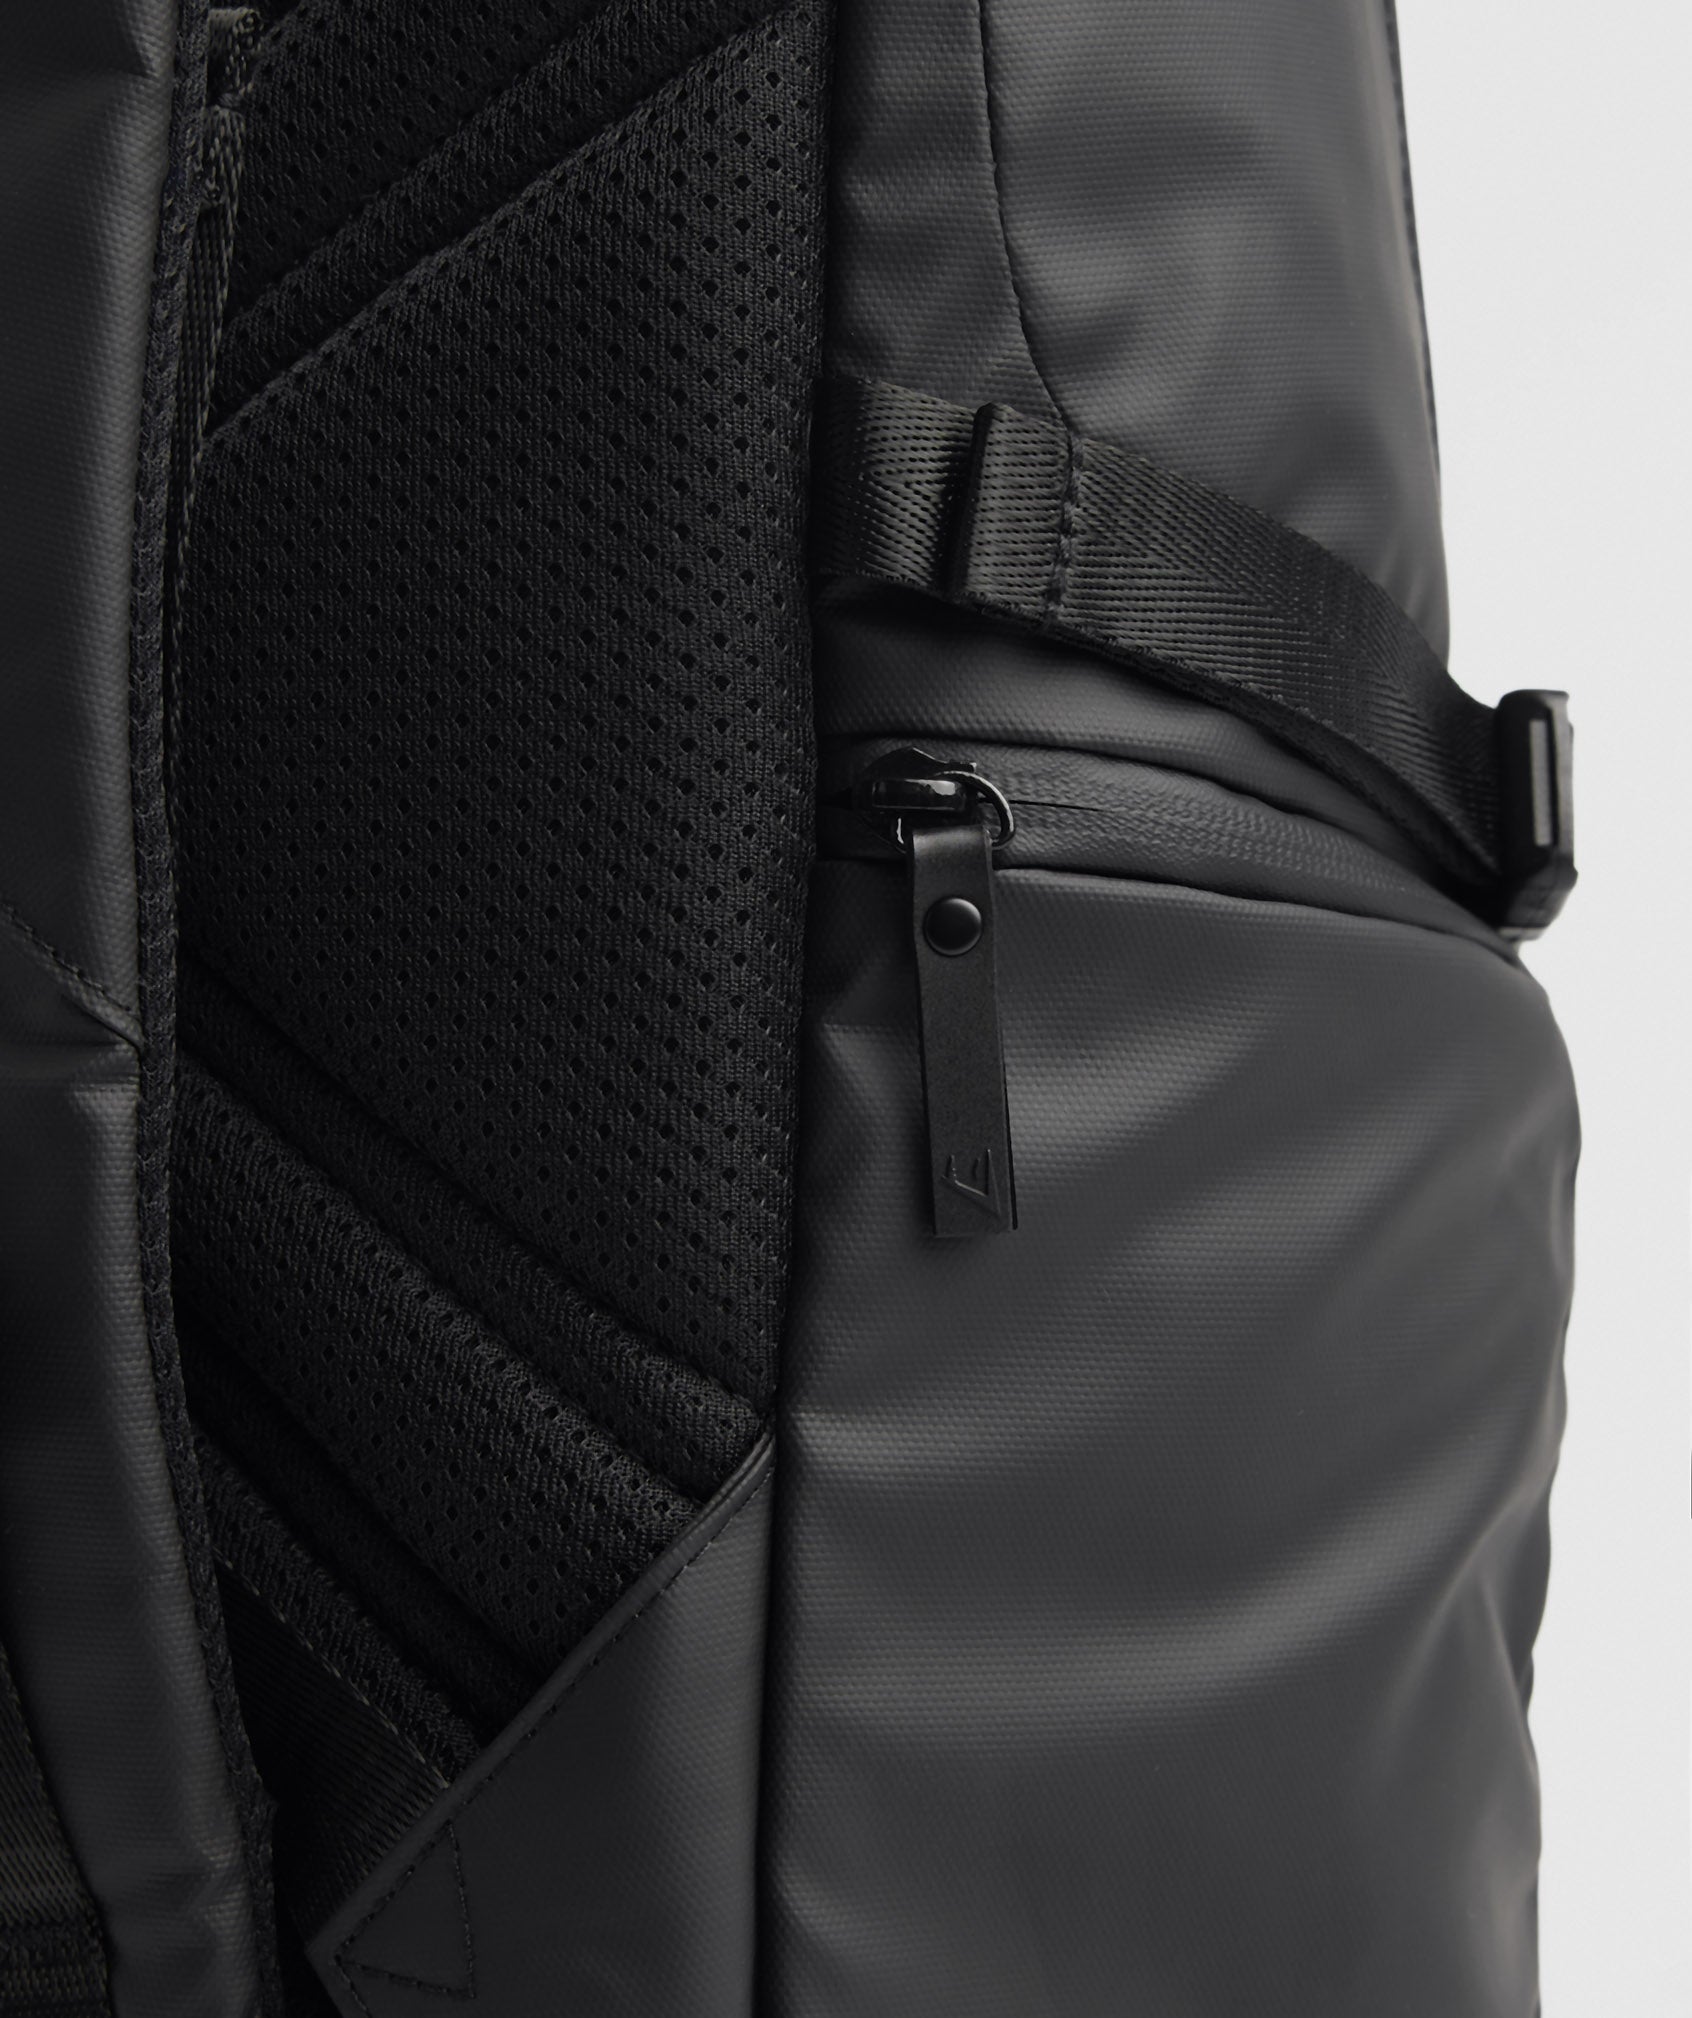 X-Series 0.3 Backpack in Black